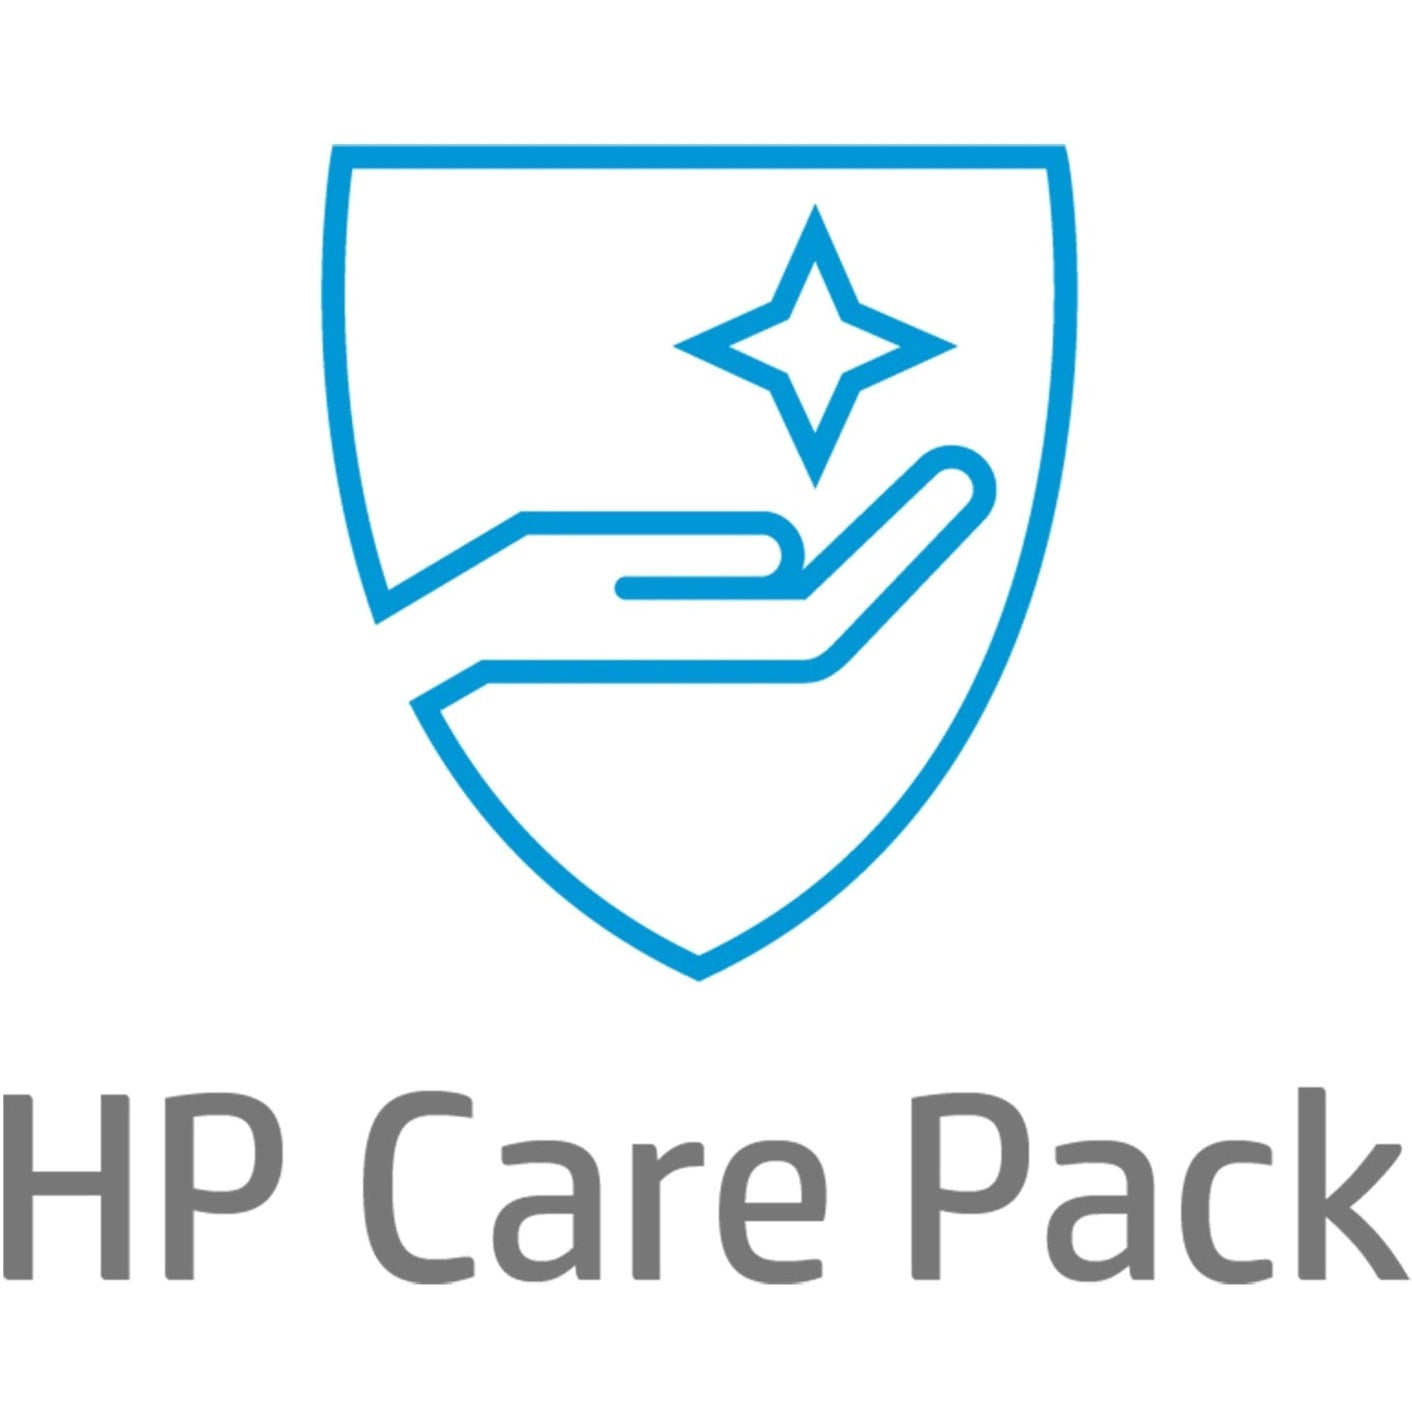 HP Care Pack - 3 Year - Service (UJ336E)